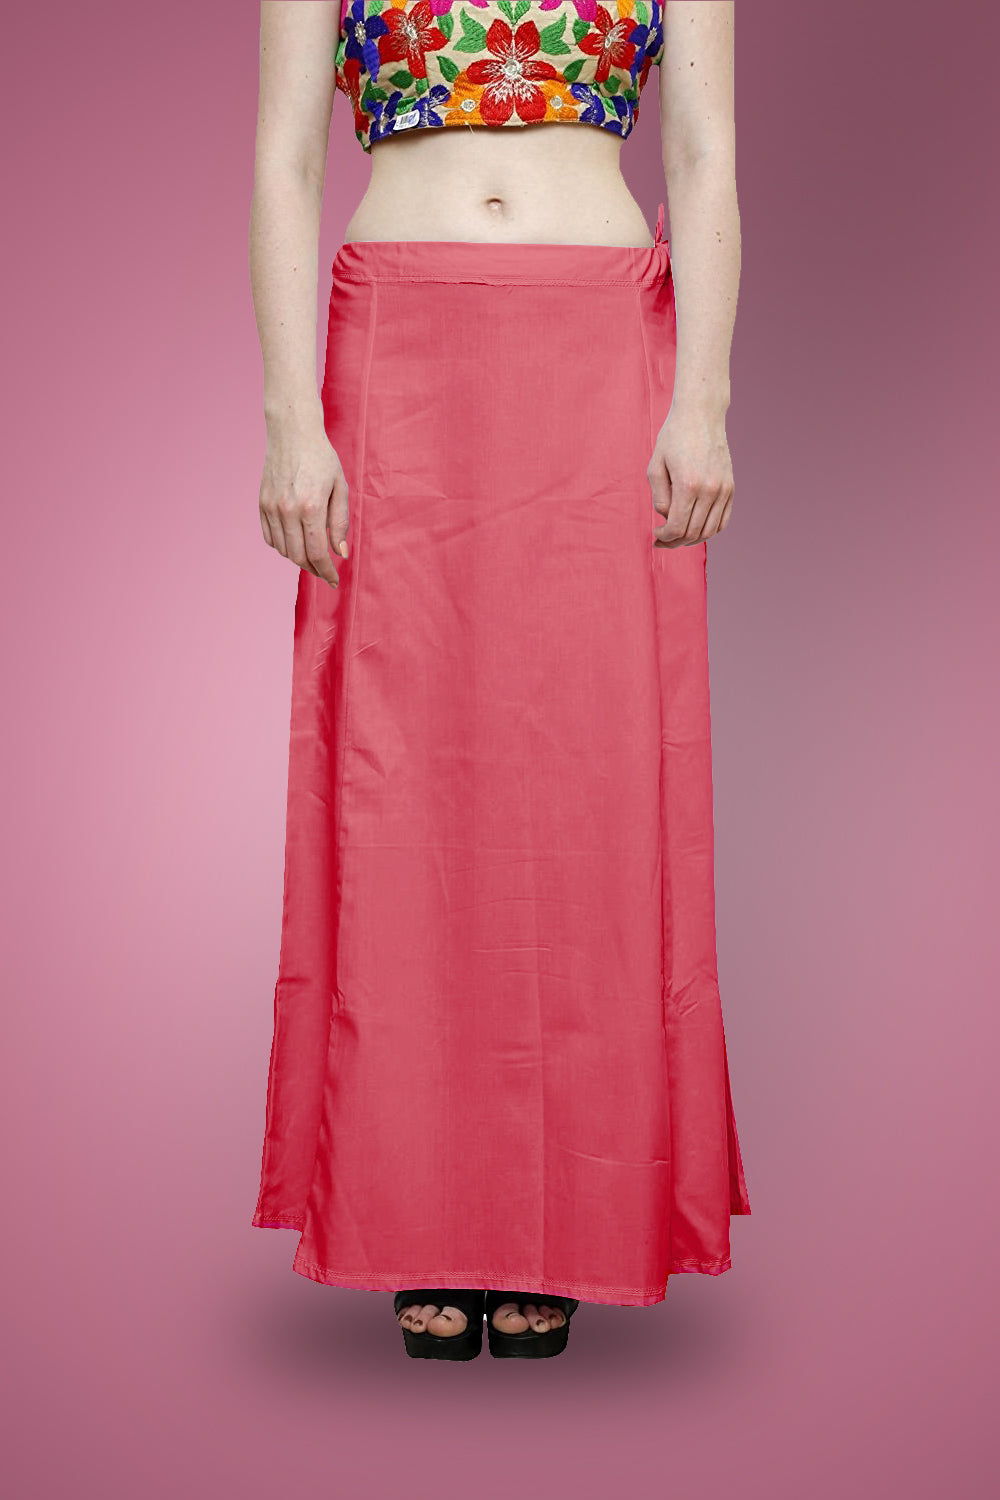 Pure Cotton Sari Petticoat Underskirt Innerwear